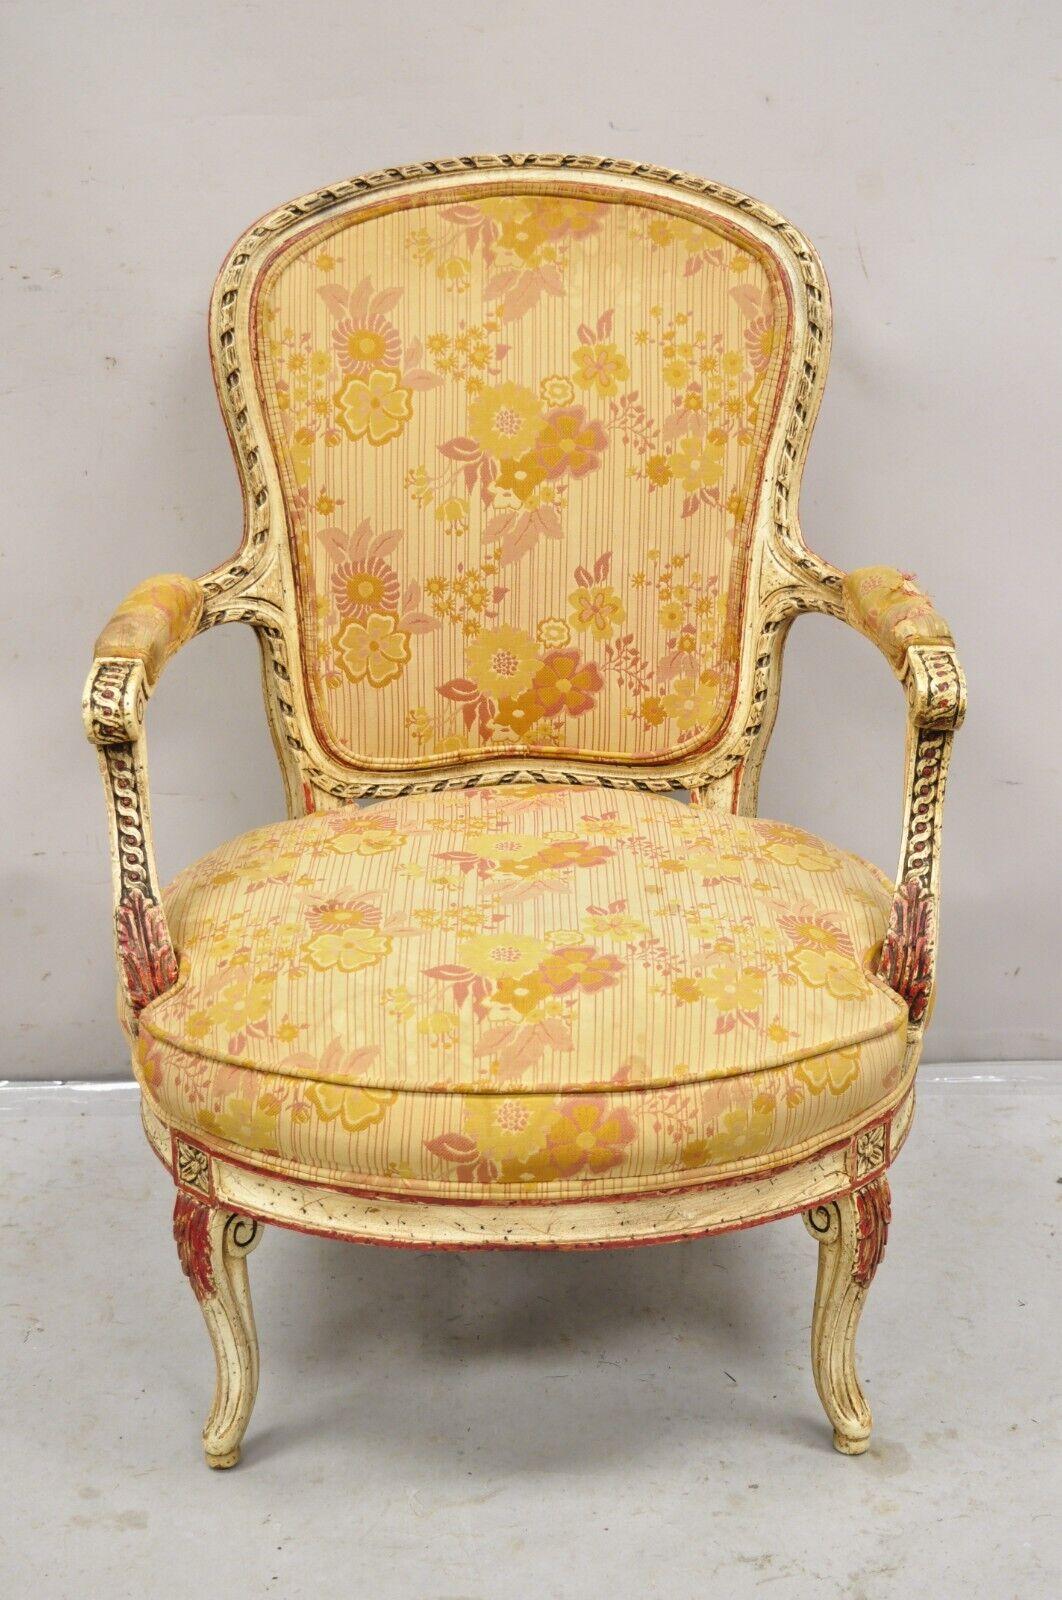 Chaise à bras Boudoir Fauteuil Vintage de style Louis XV peint en crème et rouge. Circa Mid 20th Century.
Dimensions : 35